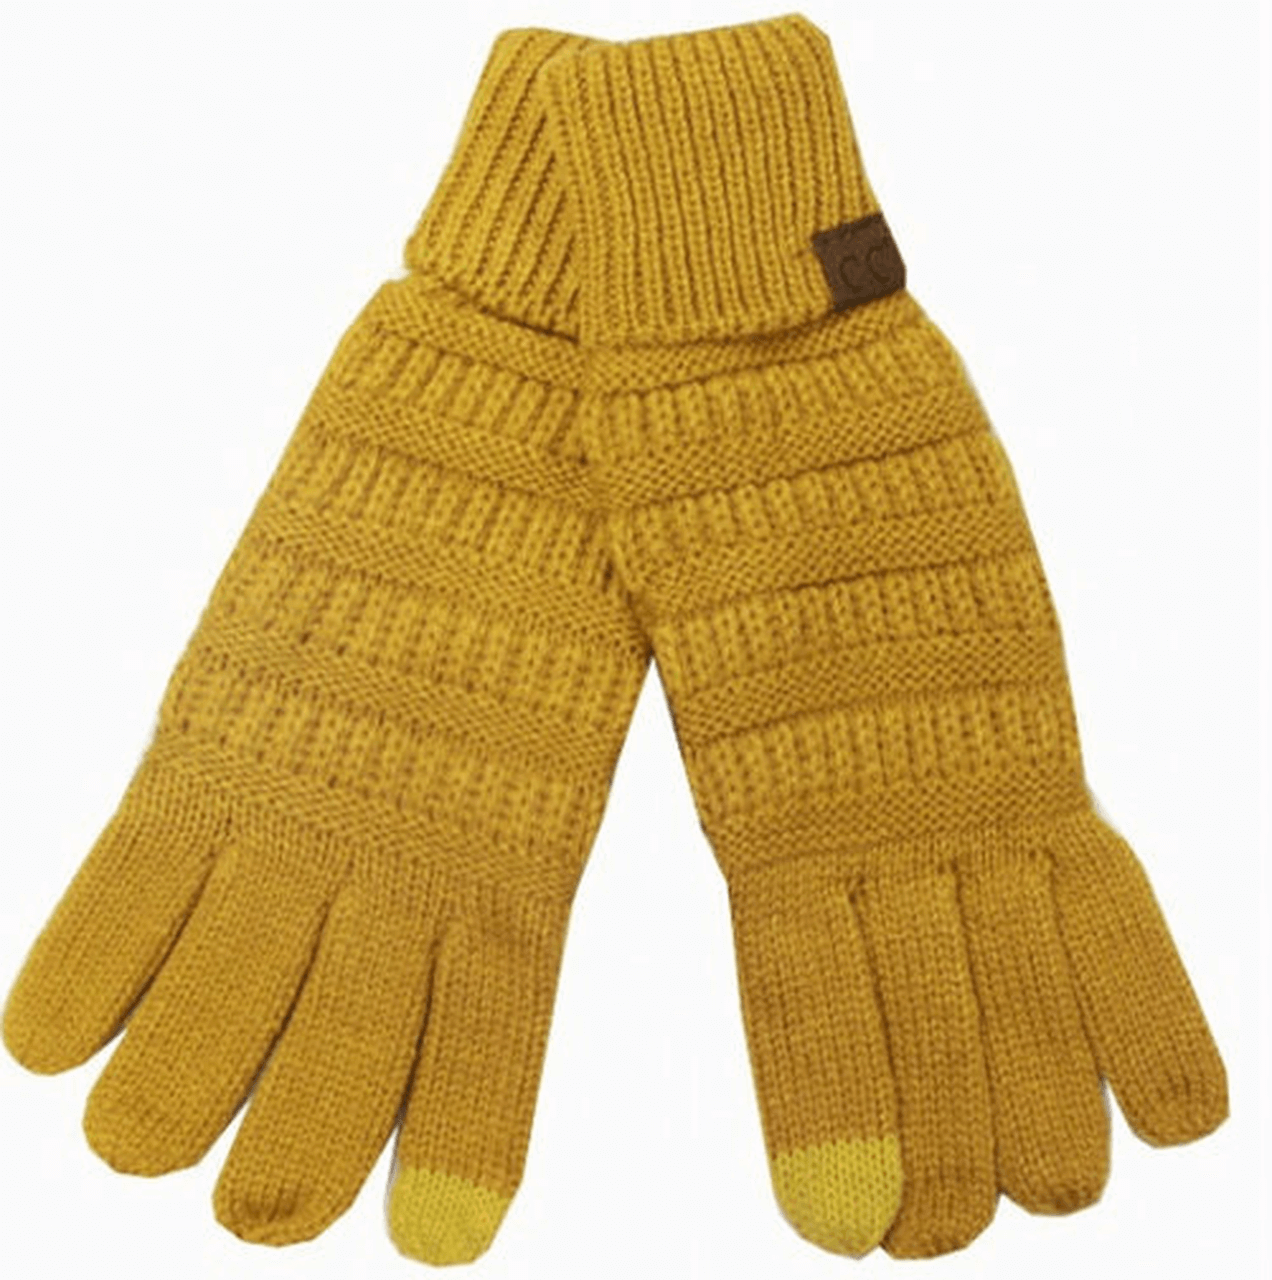 C.C Mustard Gloves